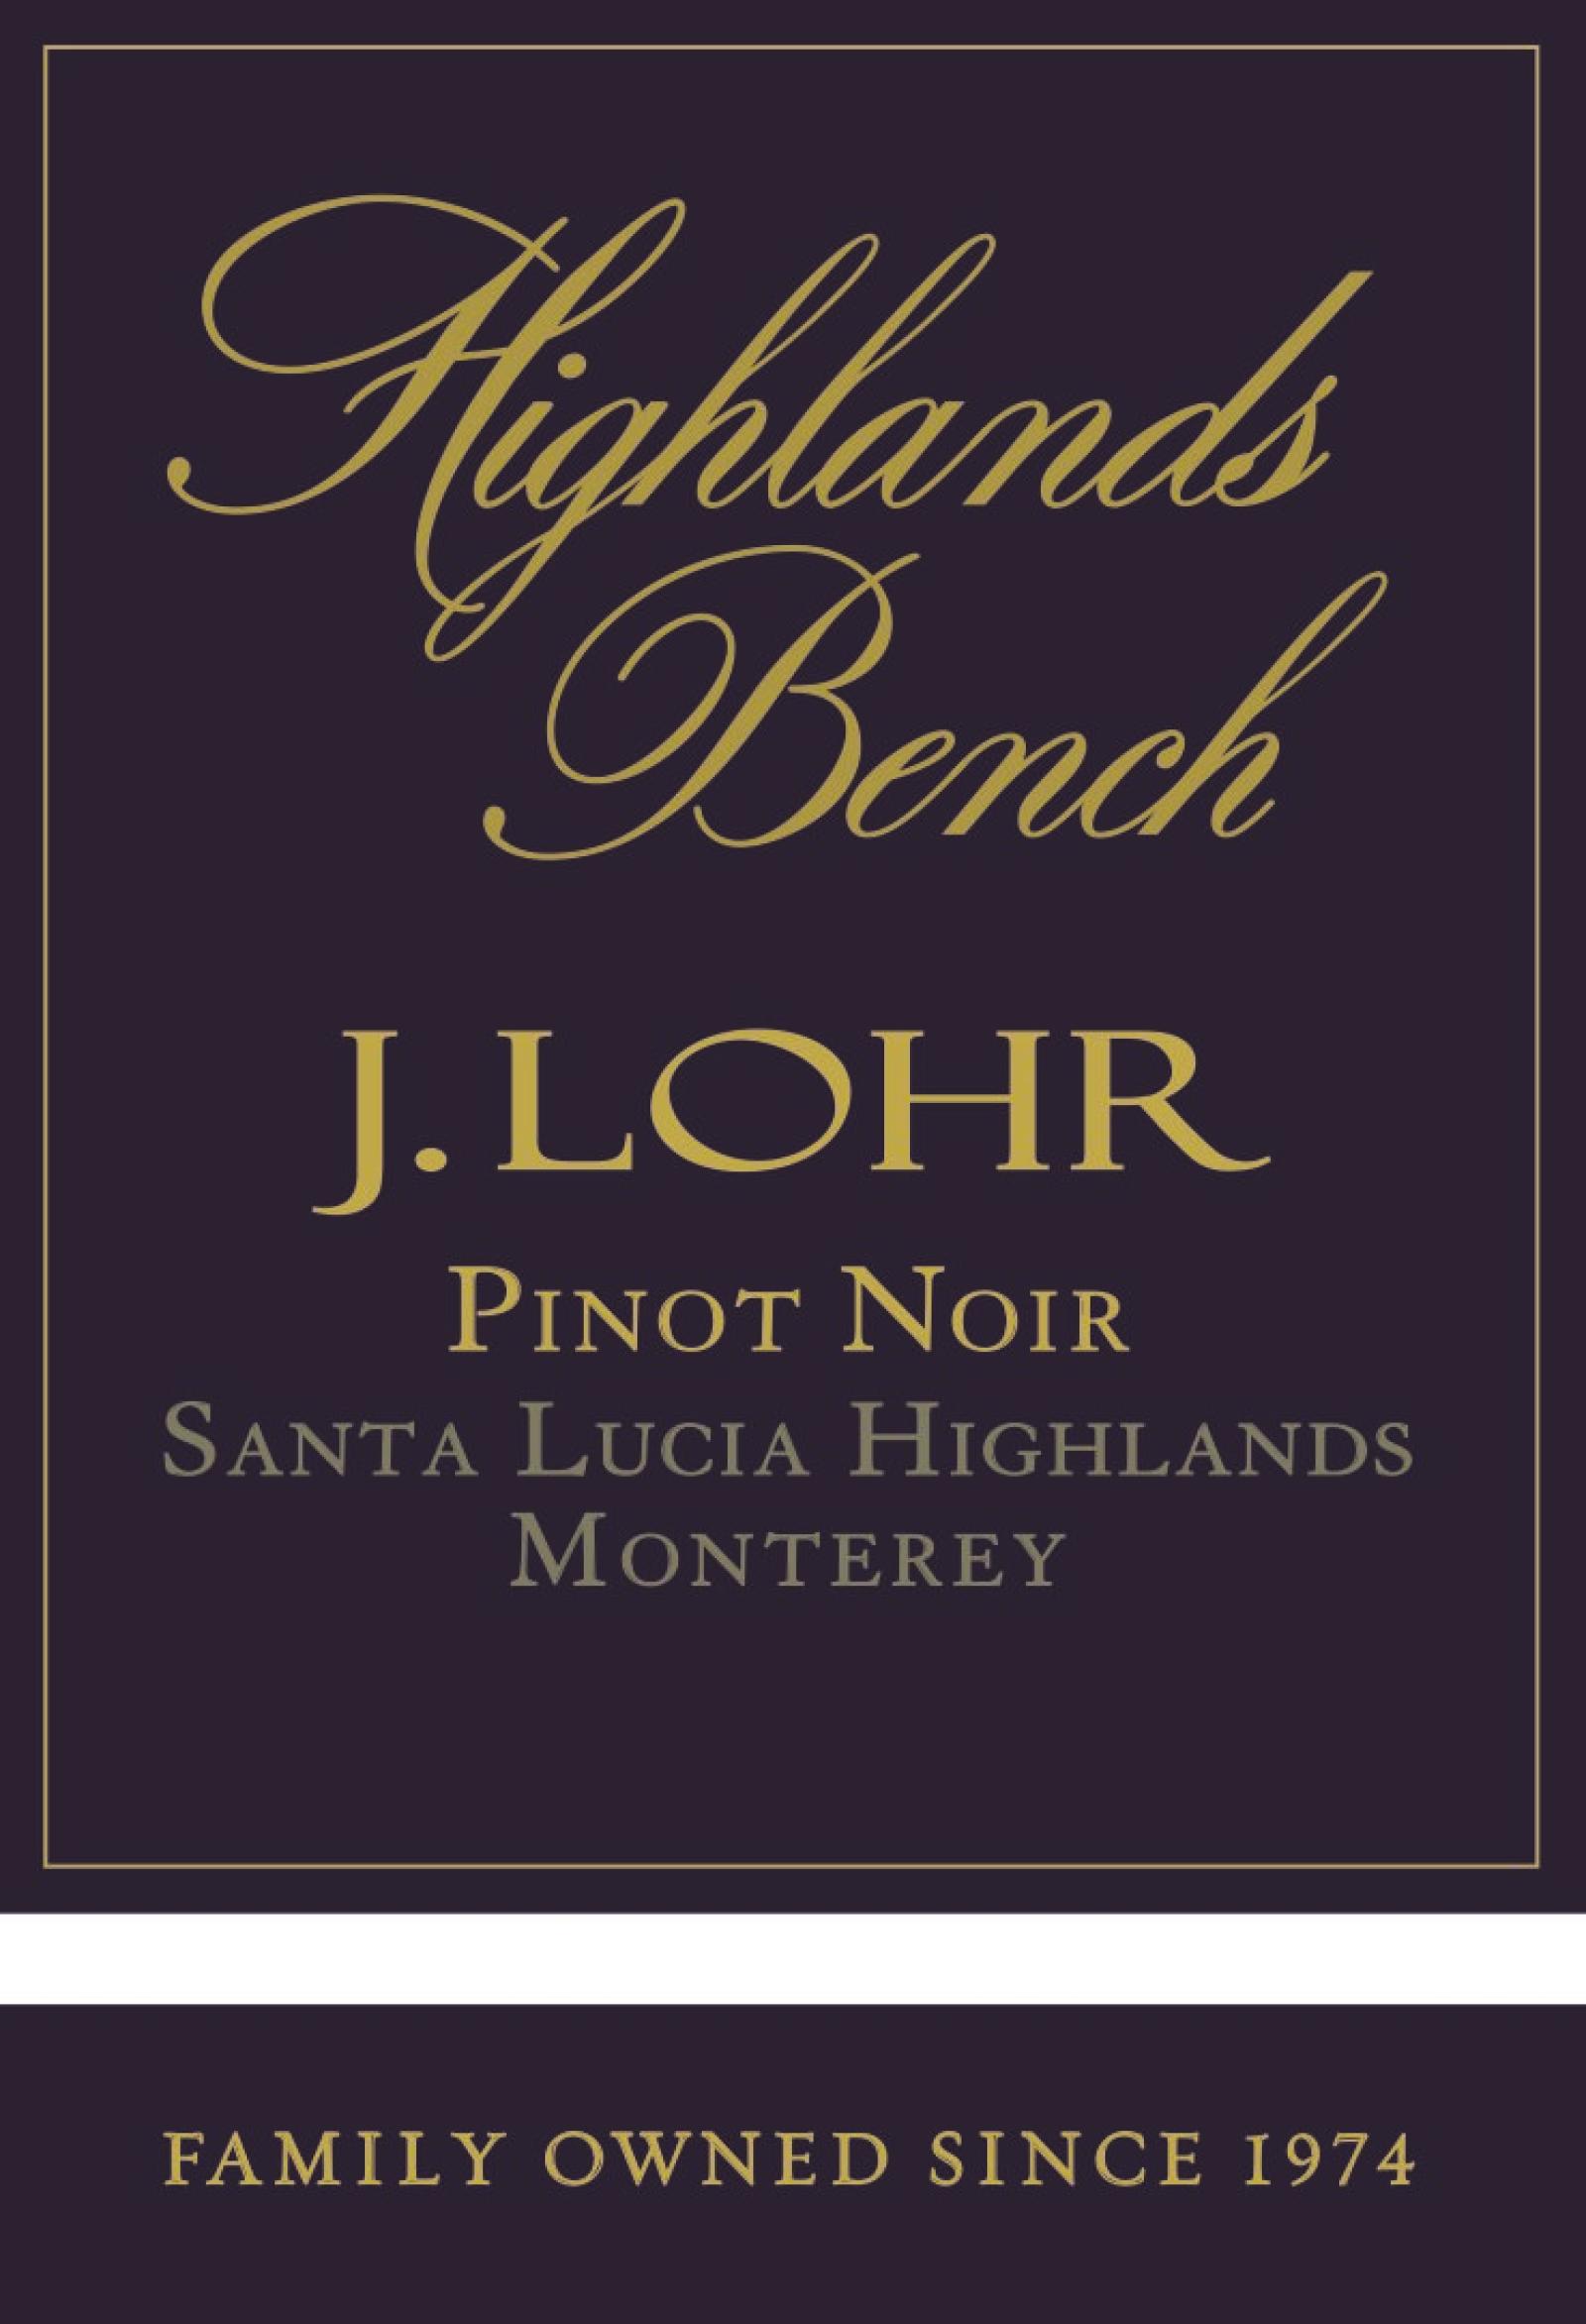 J Lohr Highlands Bench Pinot Noir 2020